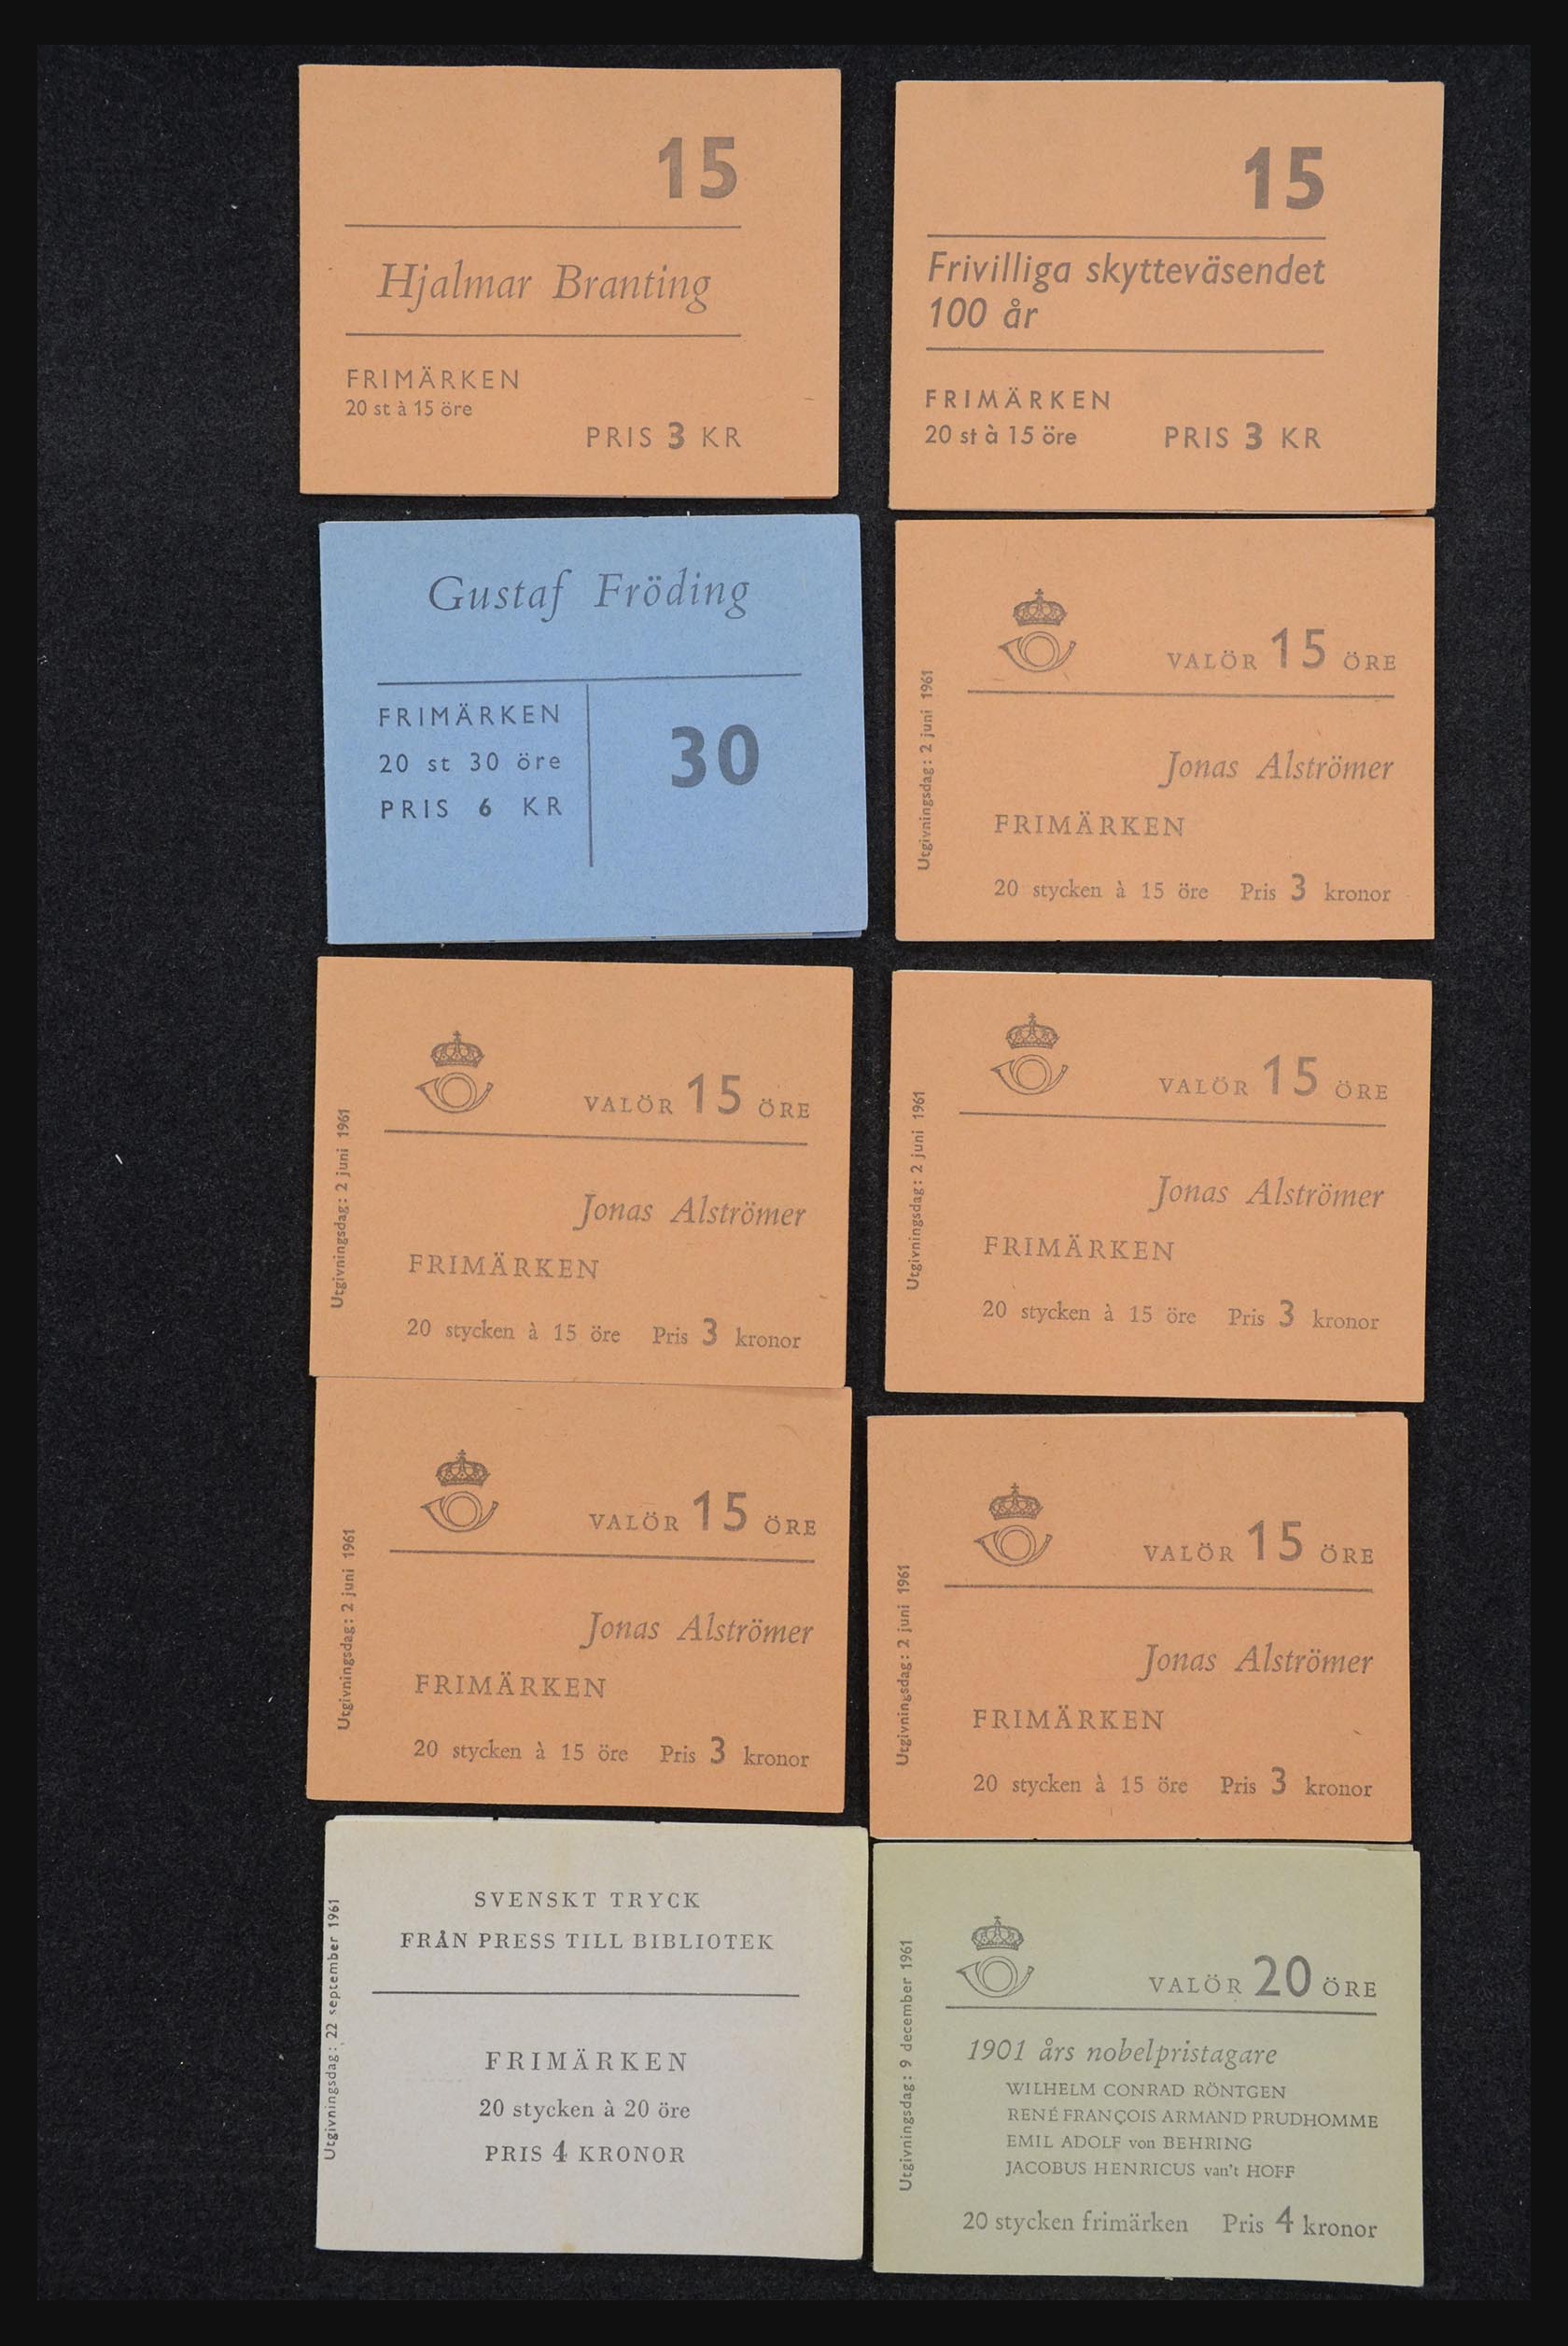 32026 032 - 32026 Sweden stampbooklets 1949-1990.